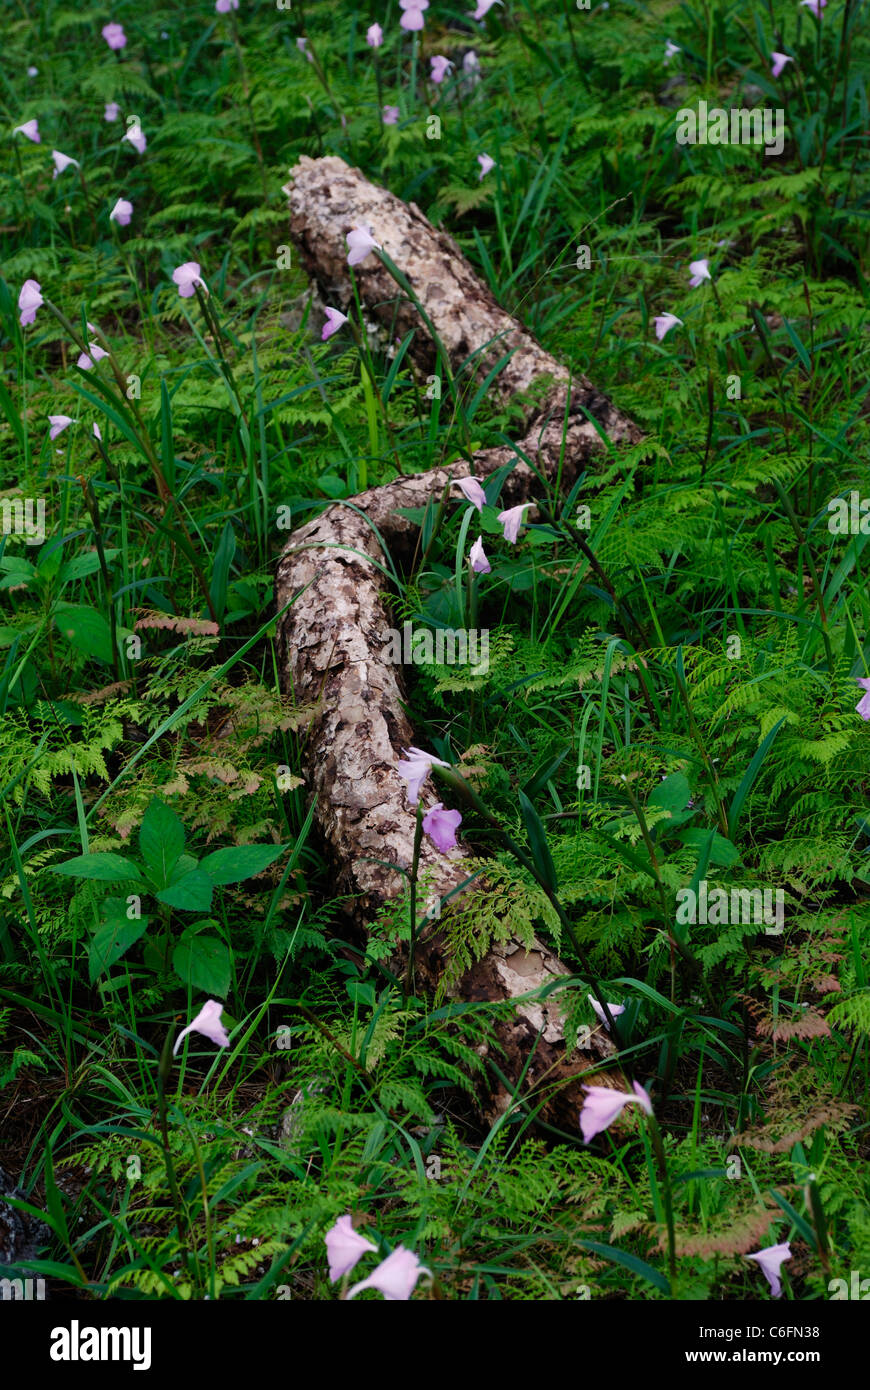 Pine log dans un champ de fleurs sauvages, Dong Hua Sao, Zone nationale de conservation de la biodiversité, le Laos Champassak Plateau Boloven Banque D'Images